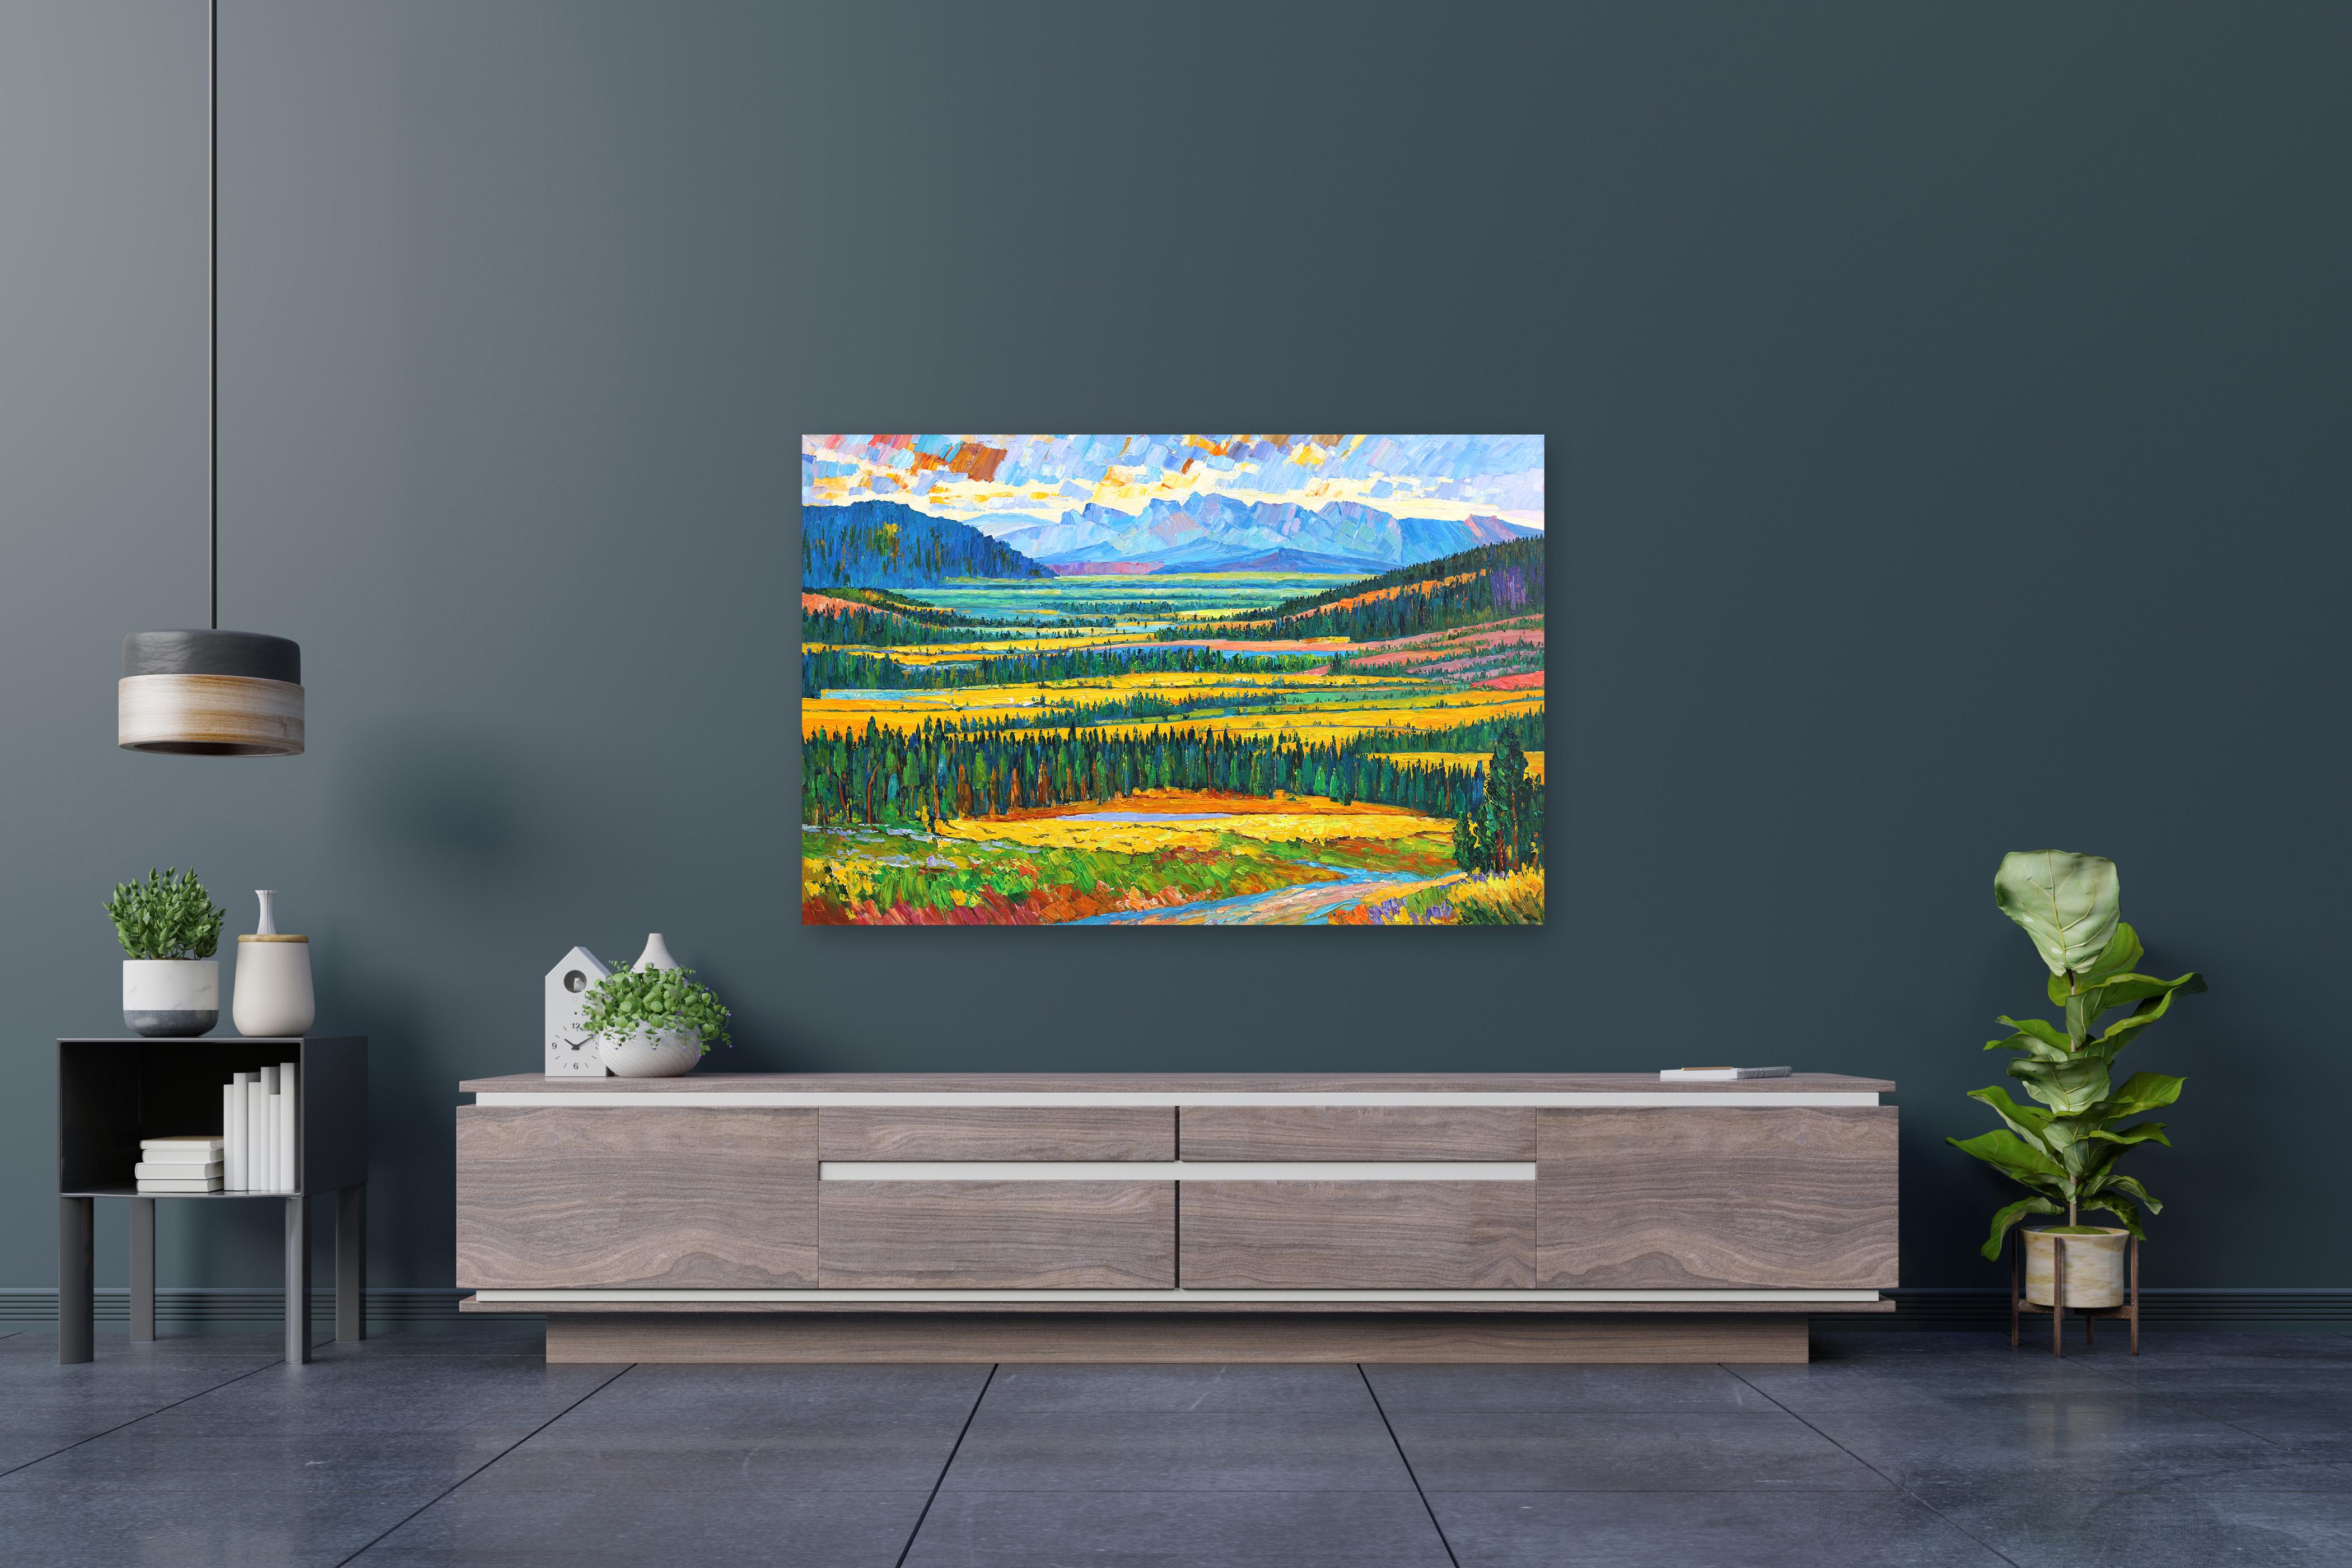 Über das Tal und den Berg - Impressionistisches Landschaftsbild Lebendige Malerei – Painting von Katharina Husslein